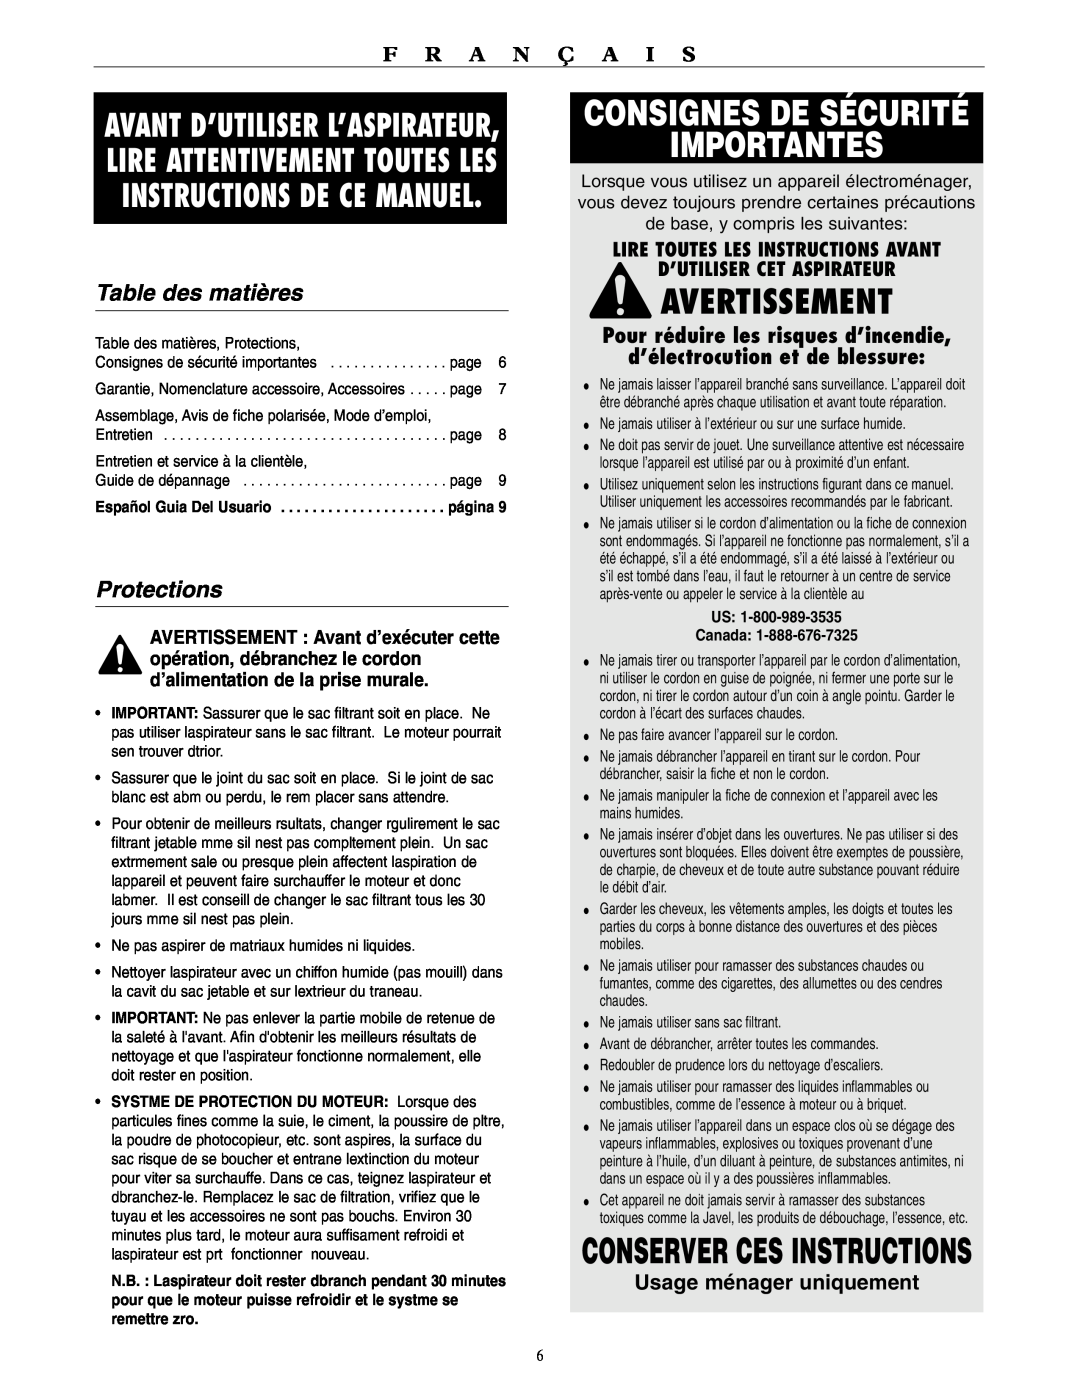 Oreck BB1100 Consignes De Sécurité Importantes, Avertissement, Conserver Ces Instructions, Table des matières, Protections 